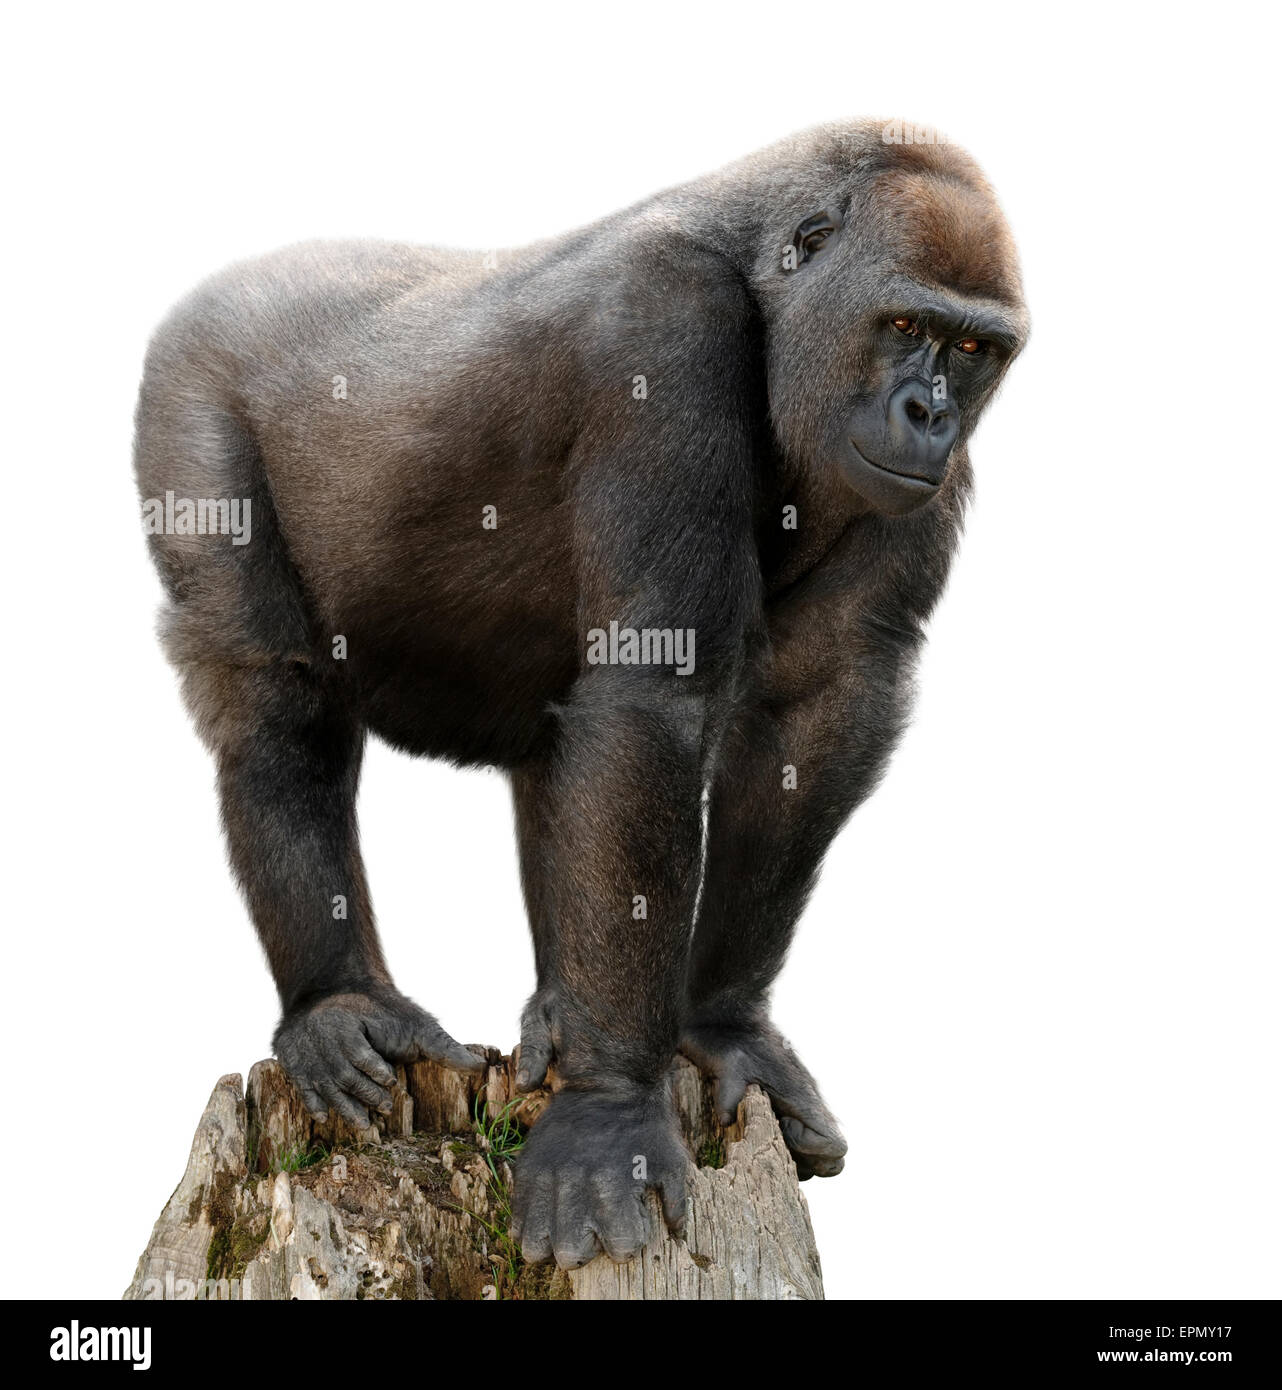 Gorilla majestueusement debout sur un affût, isolé sur blanc purte Banque D'Images